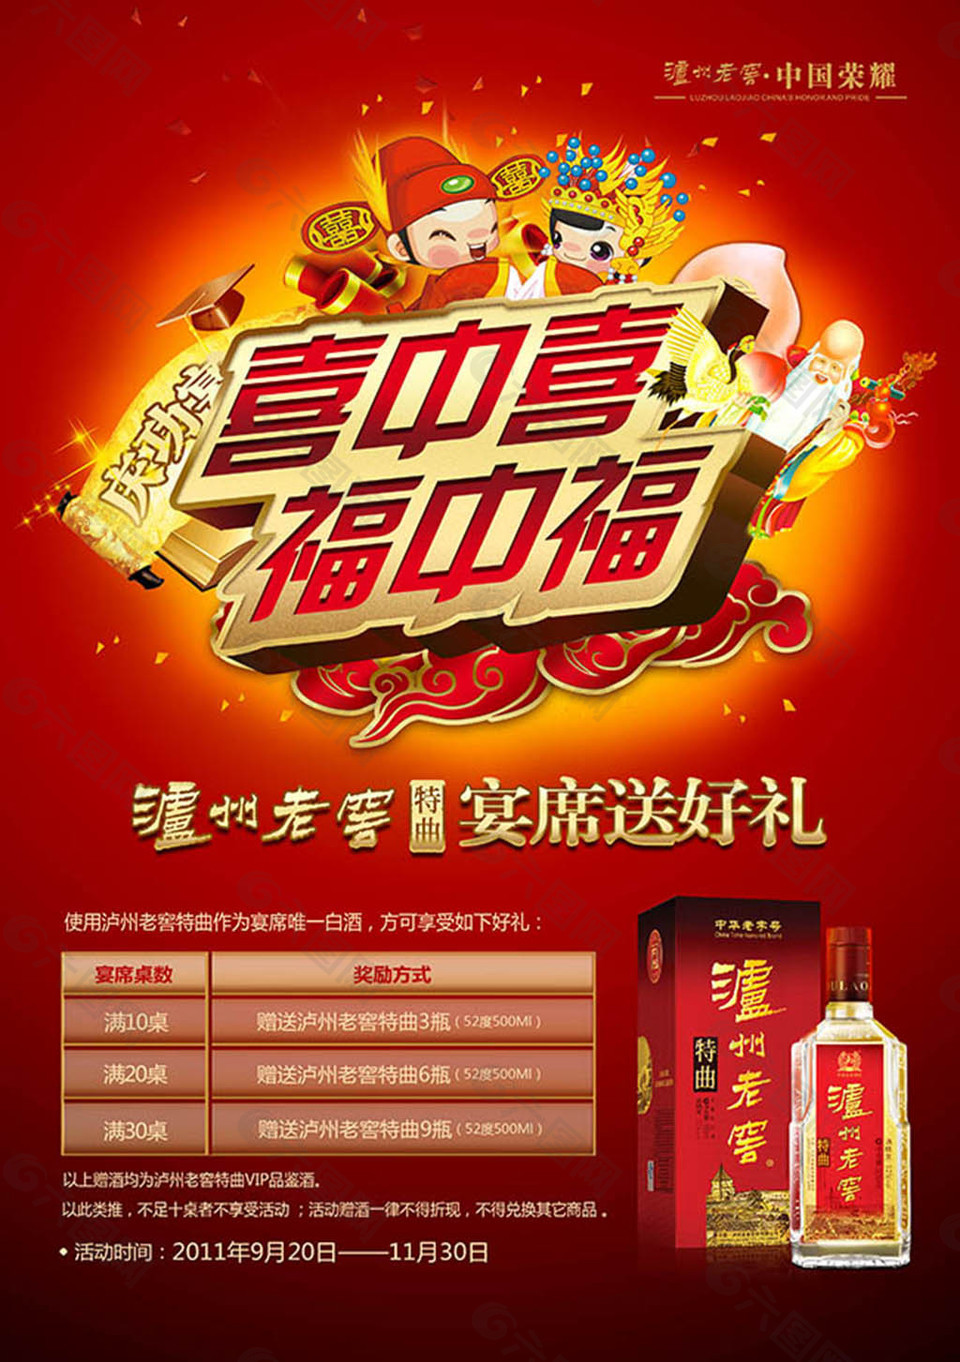 喜中喜福中福泸州老窑白酒宣传海报设计